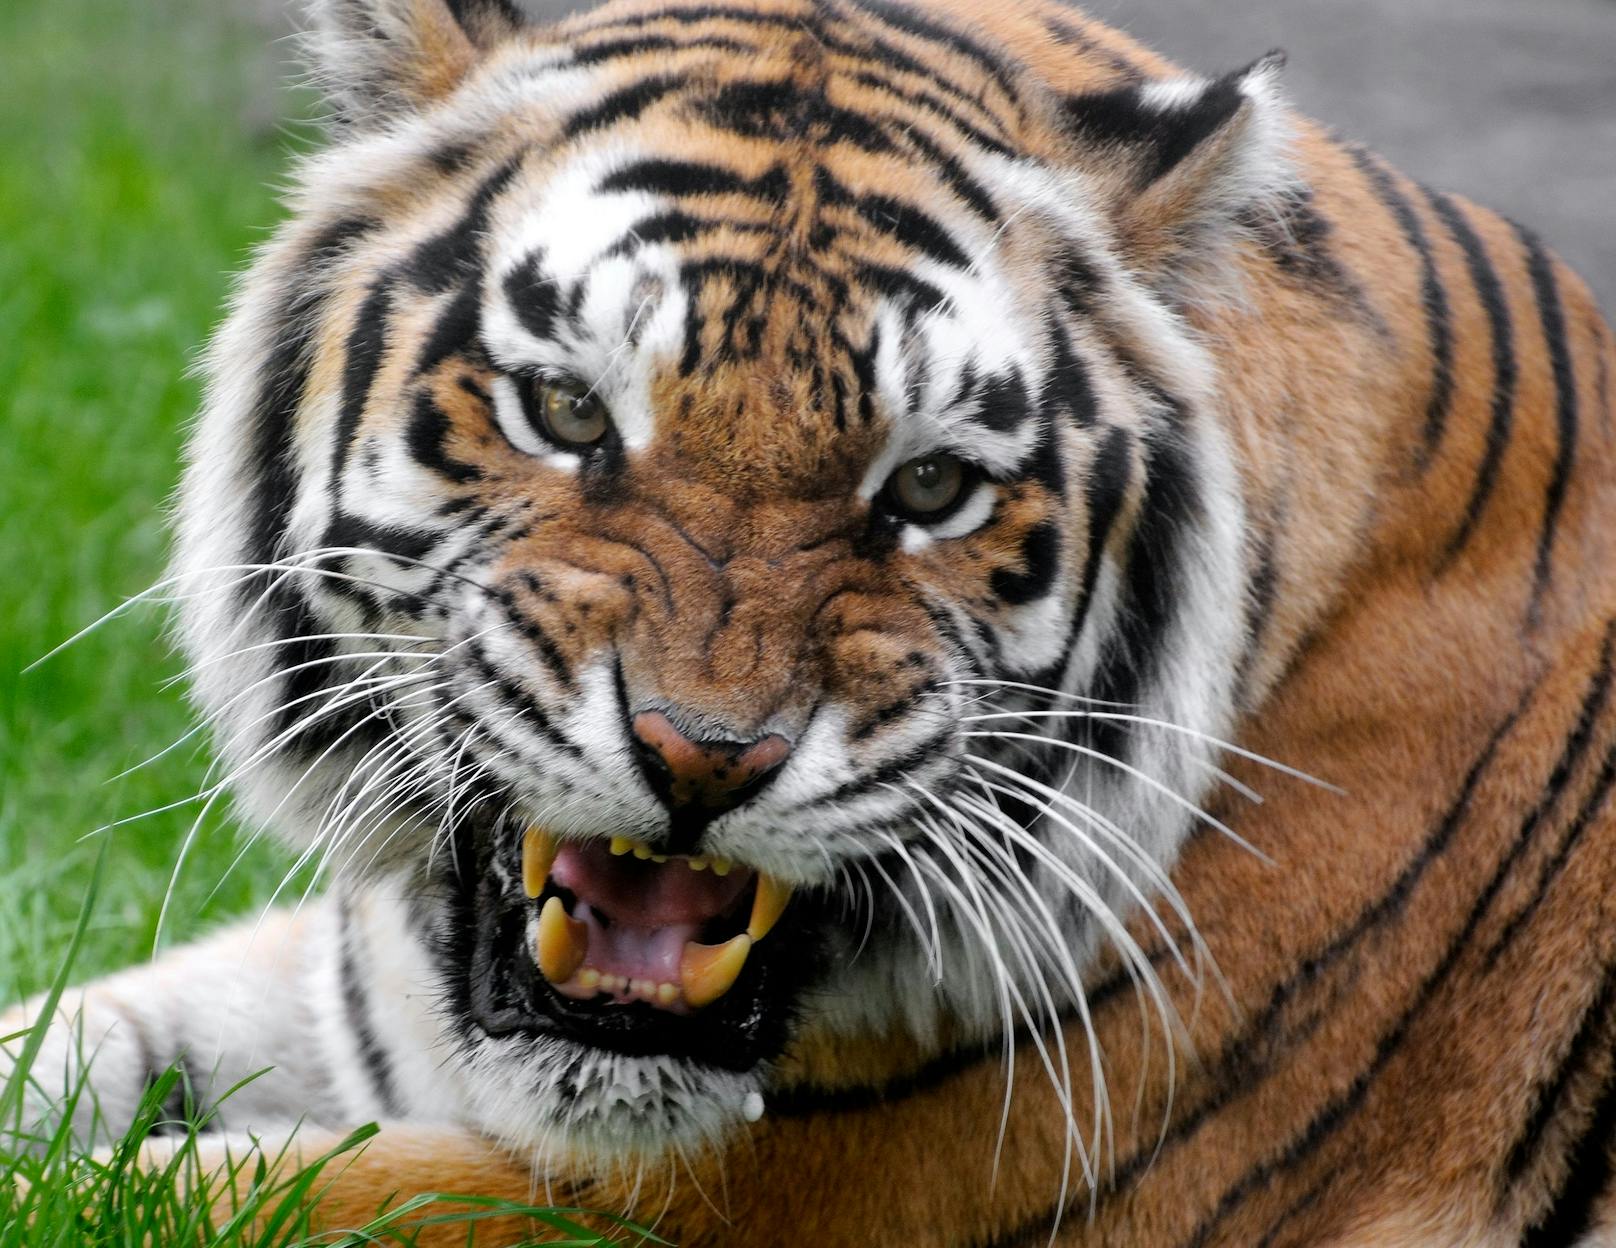 Tiger attackiert Holzfäller auf Plumpsklo, zerfetzt ihn